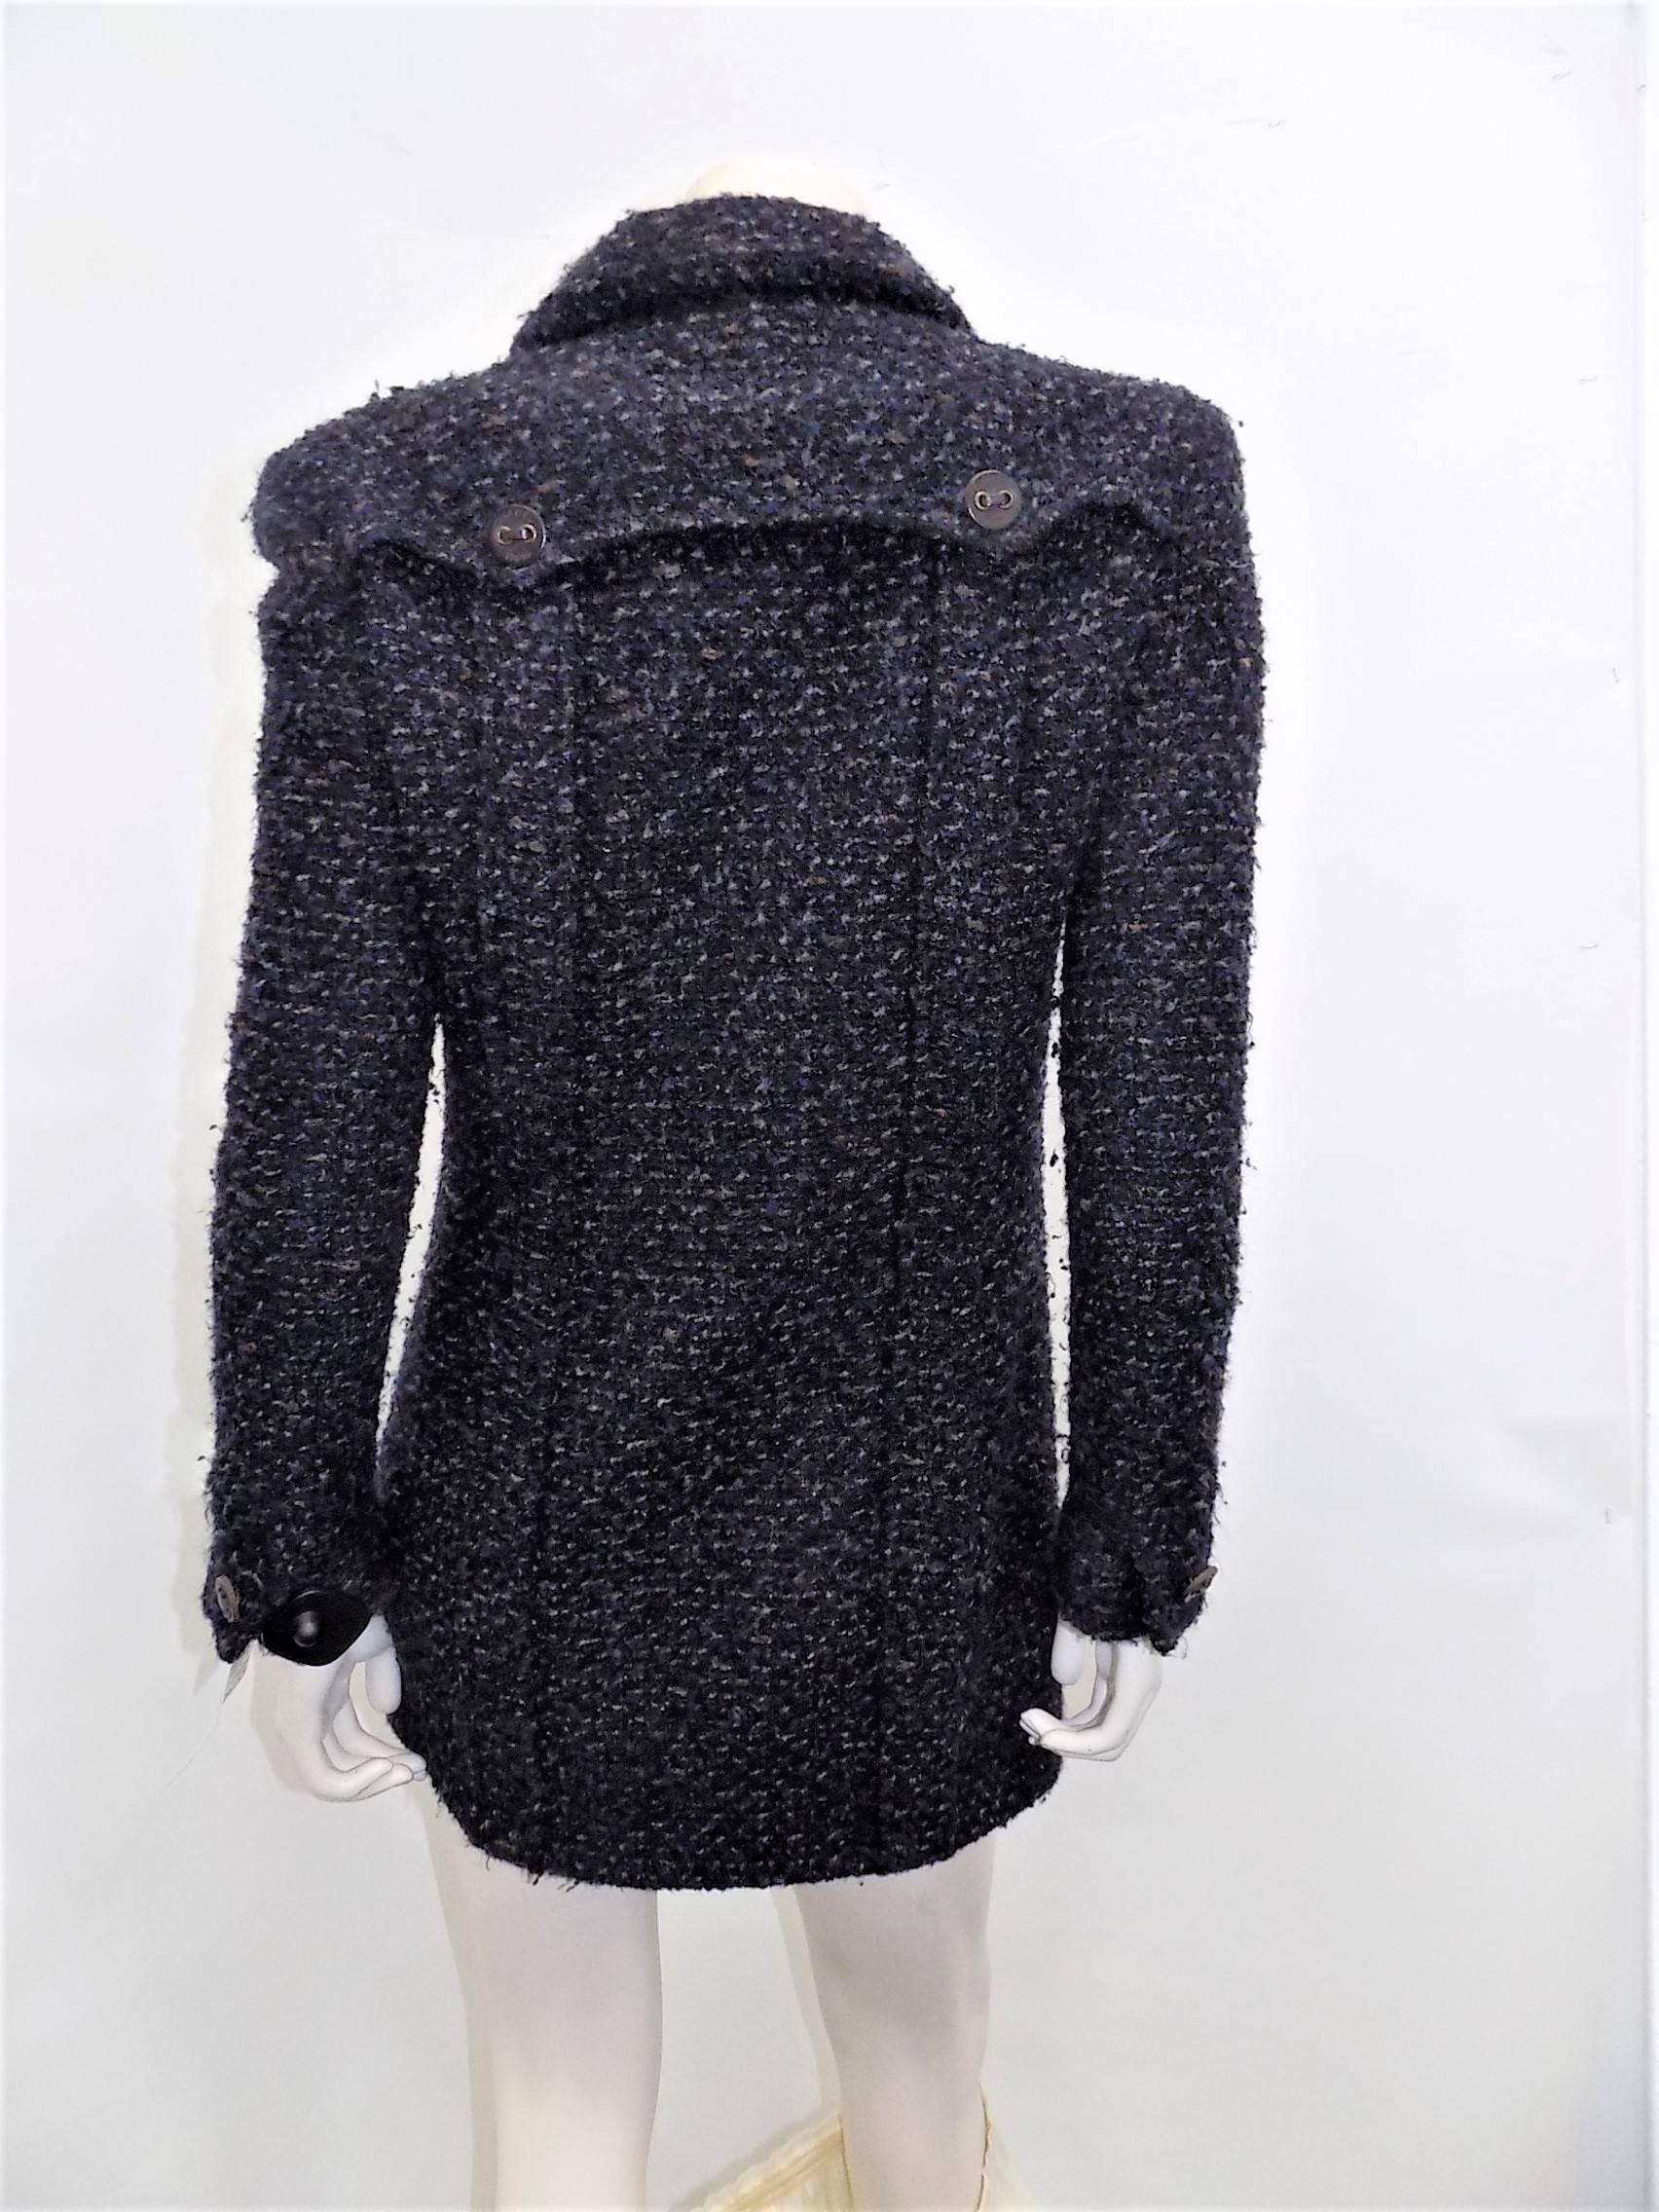 Black Short Chanel Boucle Jacket / coat